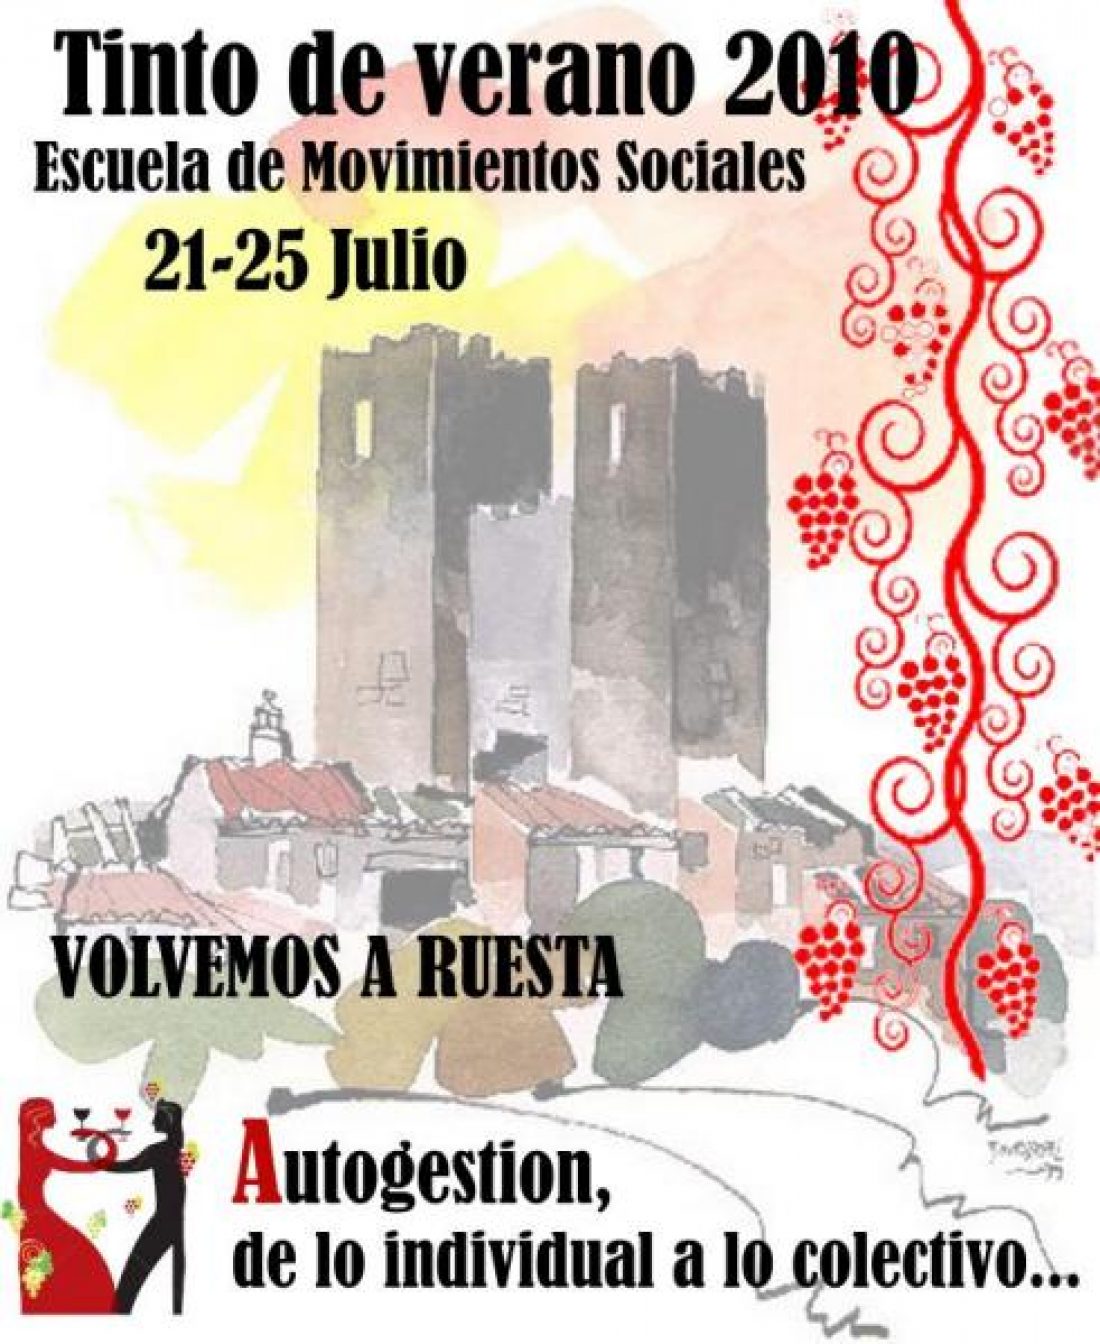 Tinto de Verano 2010 : Escuela de Movimientos Sociales. (Ruesta, 21-25 de Julio)